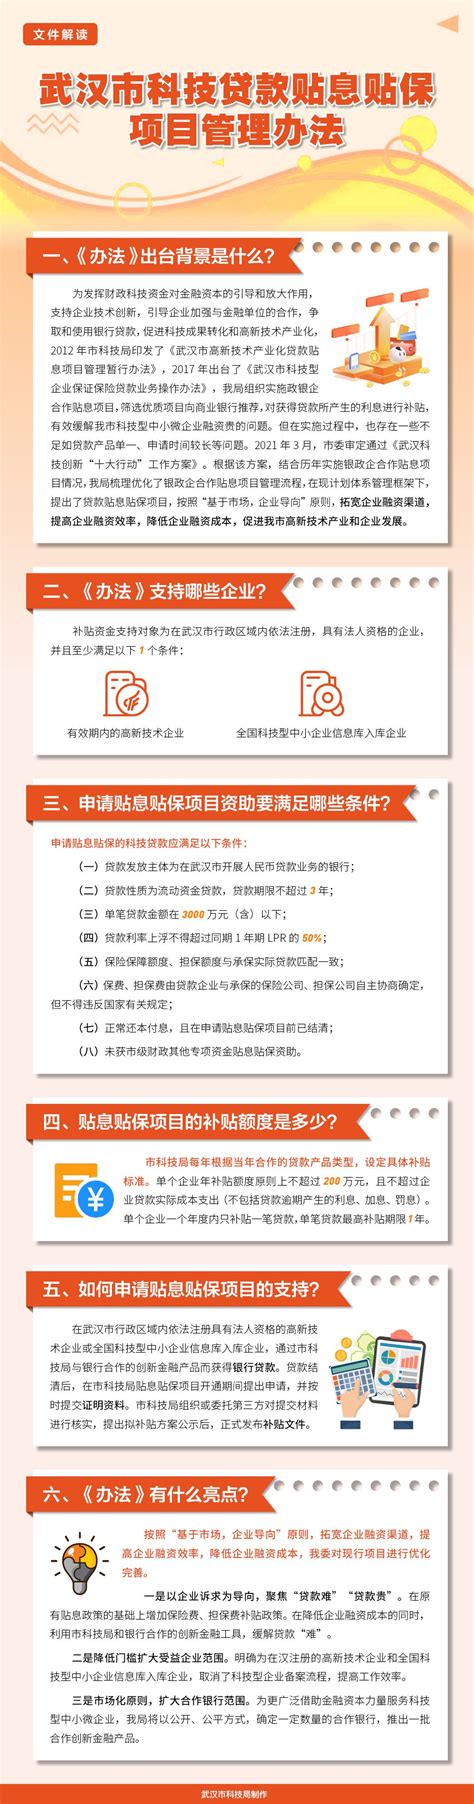 [图文解读]《武汉市科技贷款贴息贴保项目管理办法》政策解读_江城红领驿站